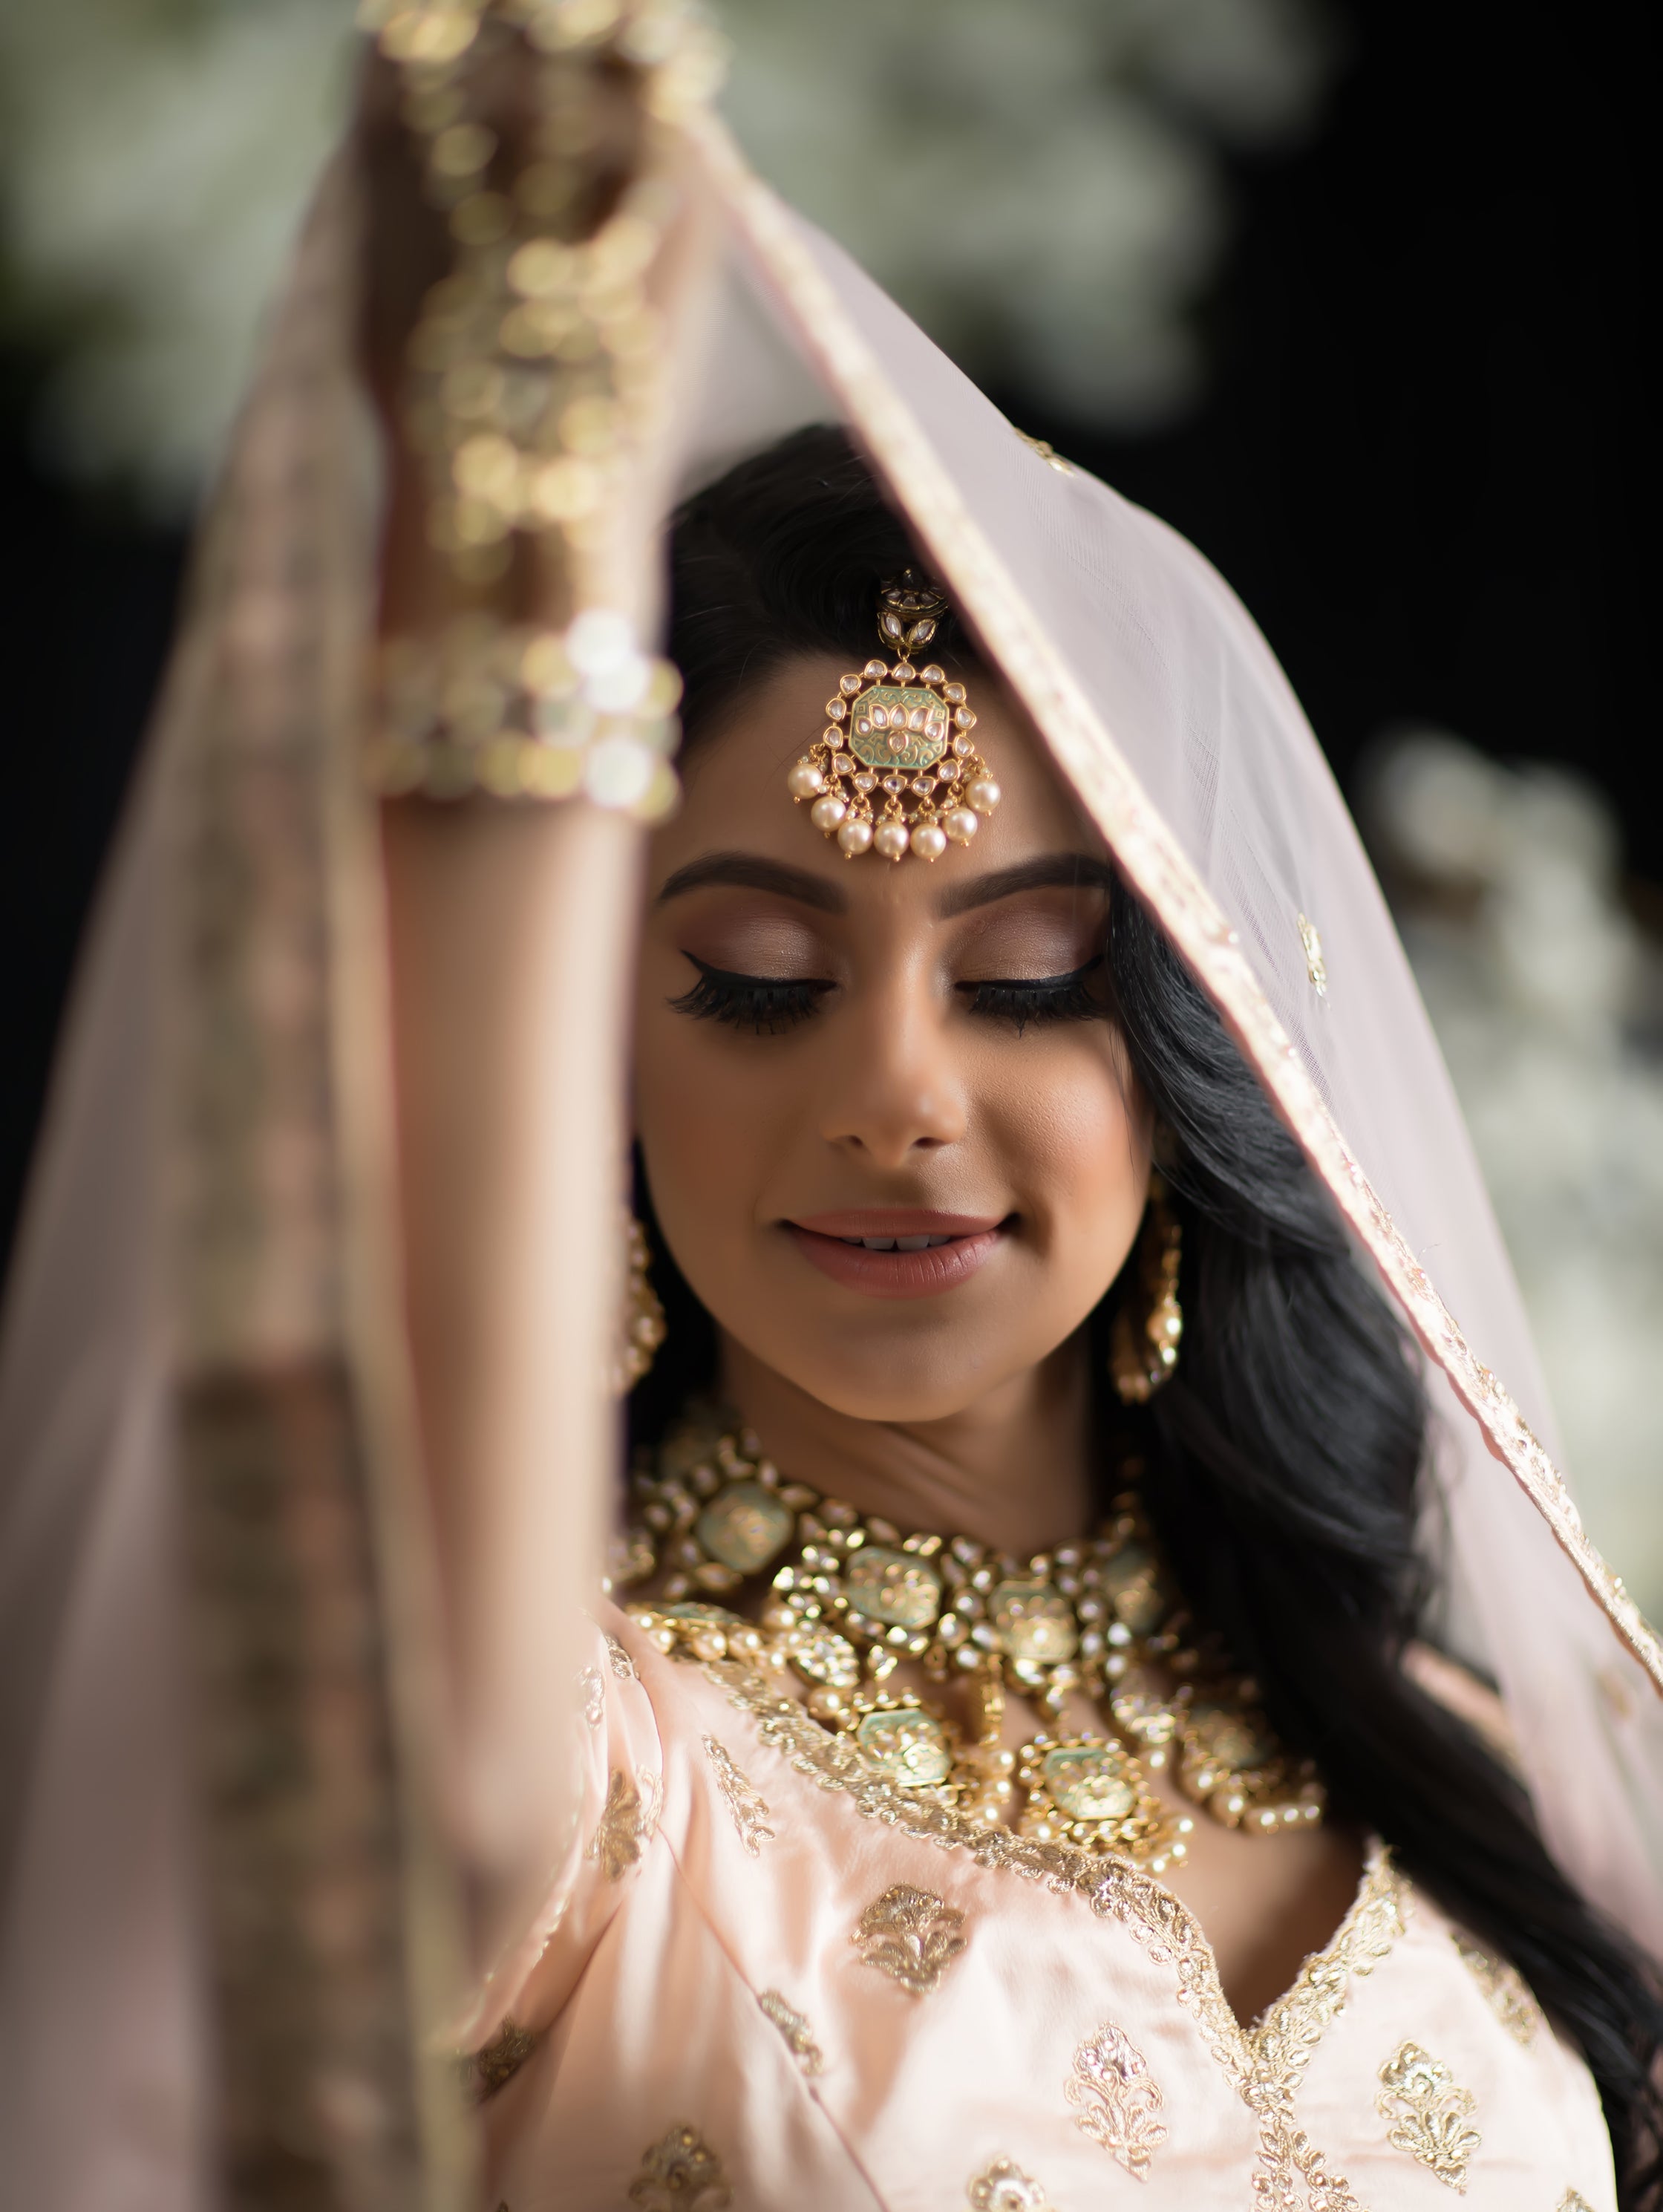 30+ Latest Indian Bridal Wedding Hairstyles Images 2021-2022 | Wedding  blouse designs, South indian wedding hairstyles, Indian bridal lehenga